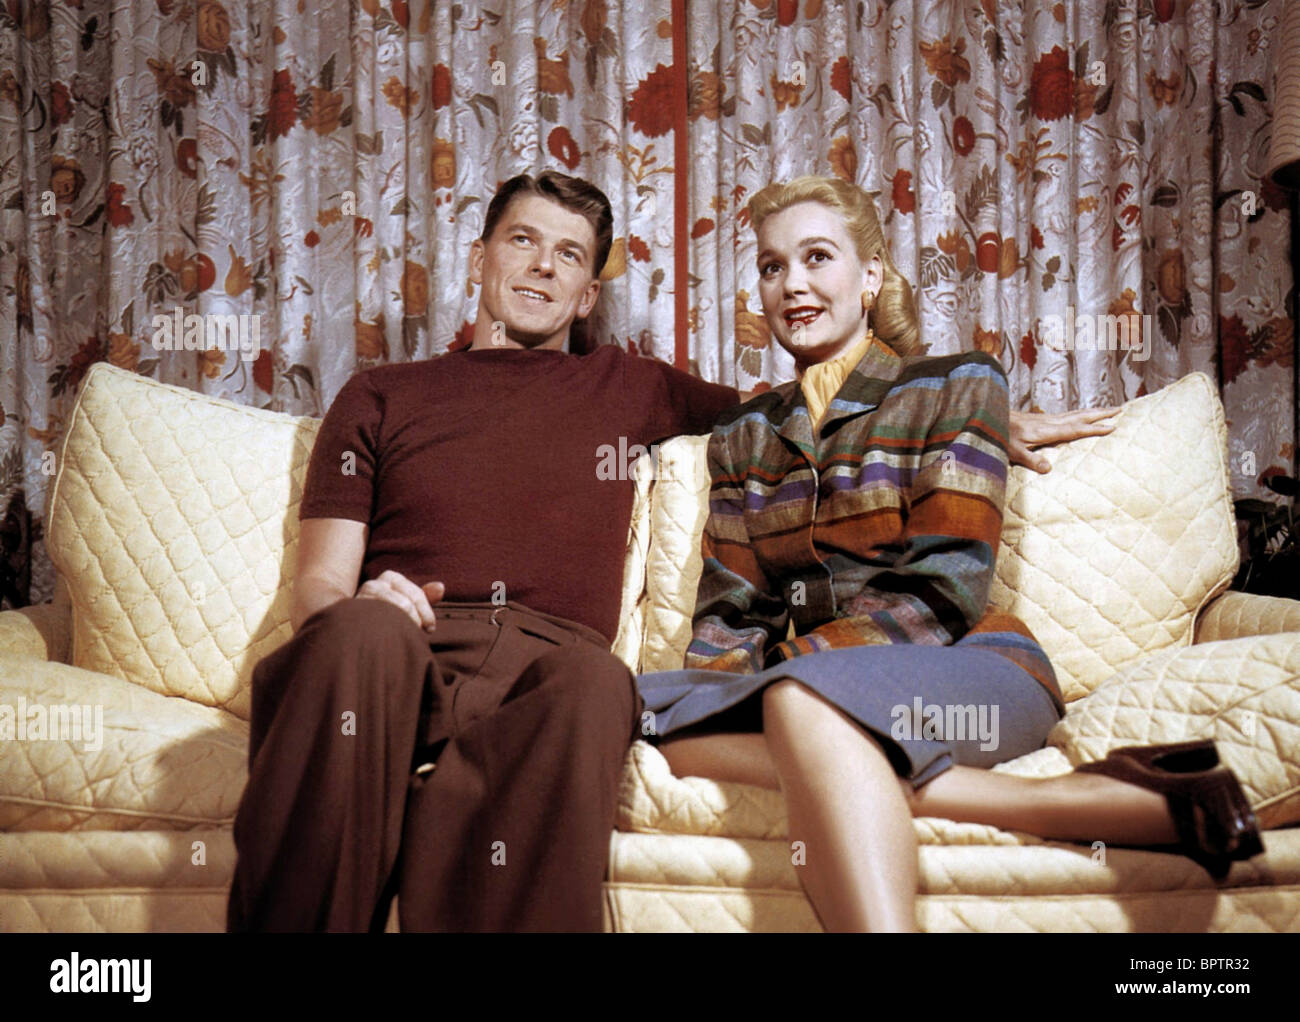 RONALD REAGAN & JANE WYMAN ACTOR & ACTRESS (1945) Stock Photo